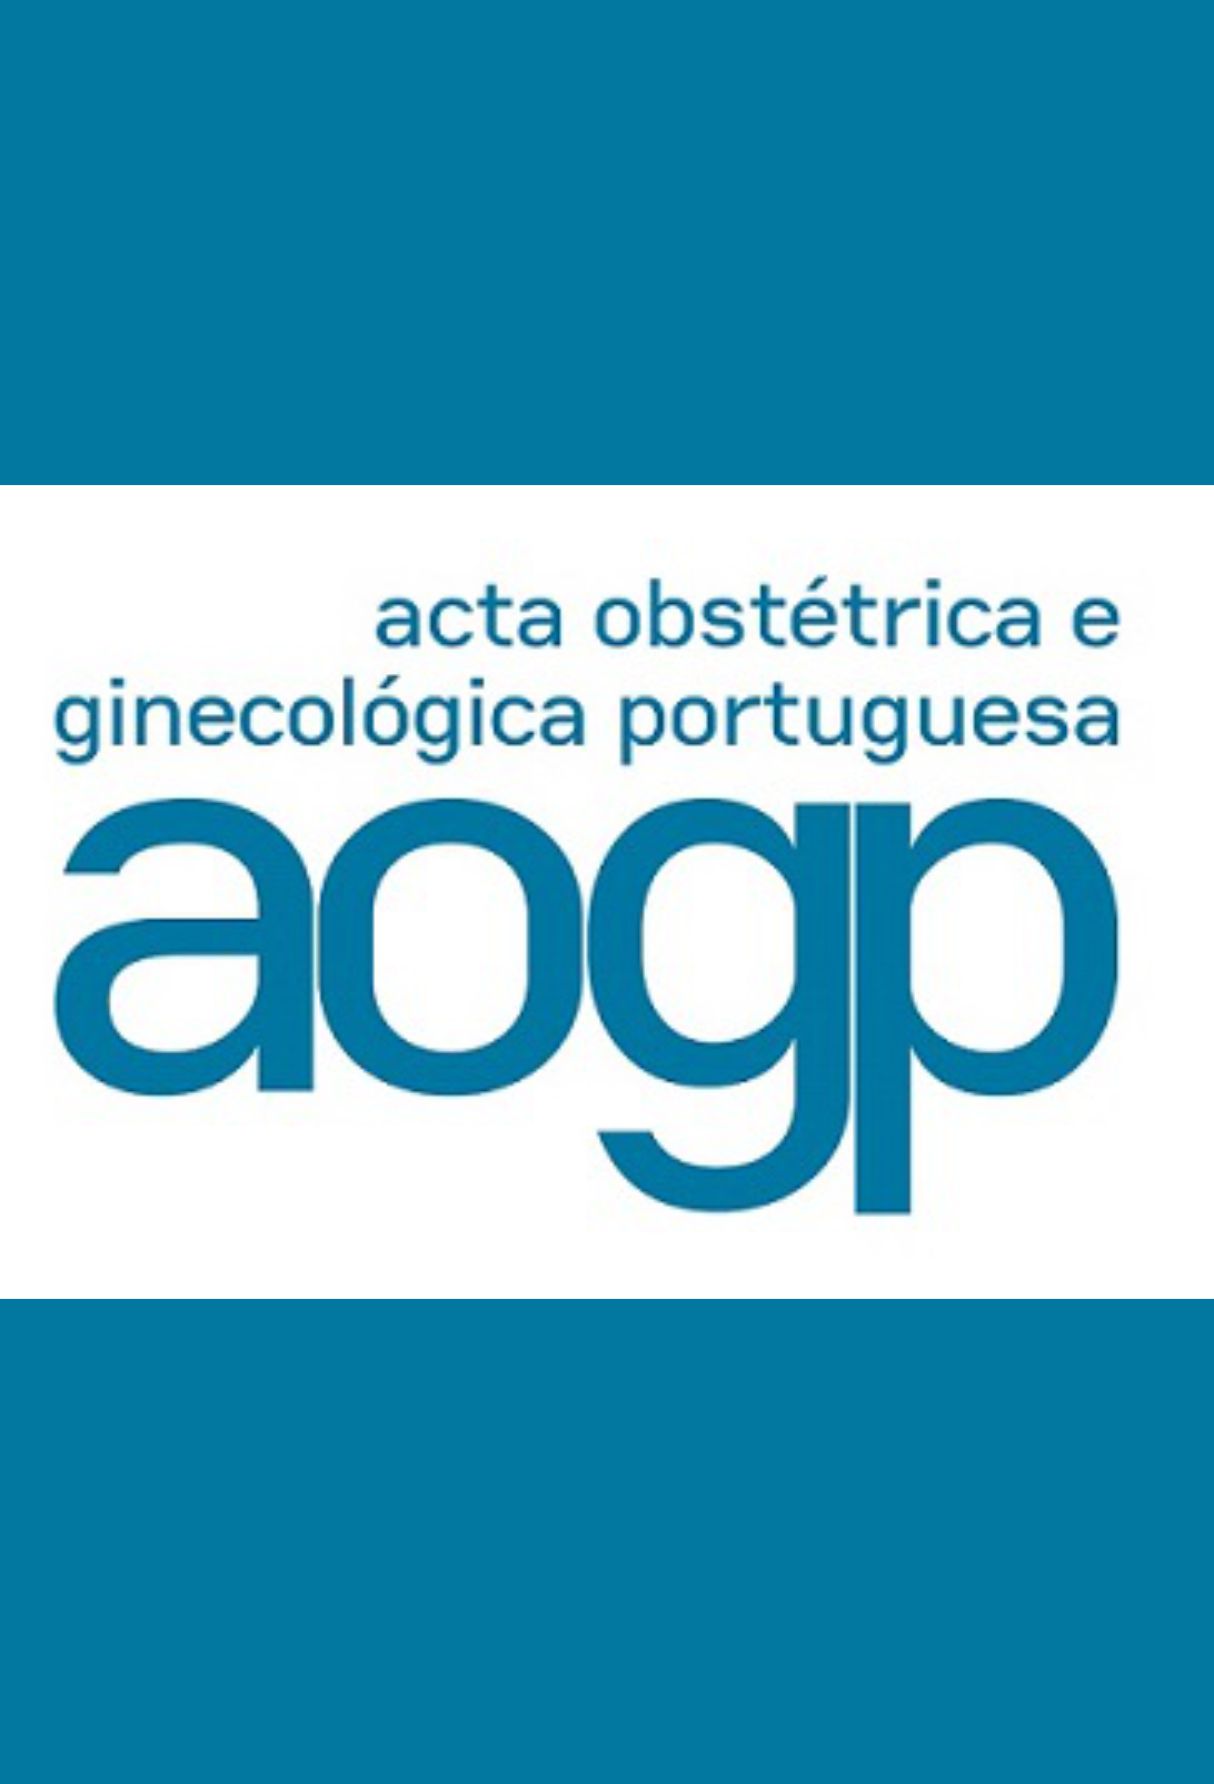 Capa: Acta Obstétrica e Ginecológica Portuguesa